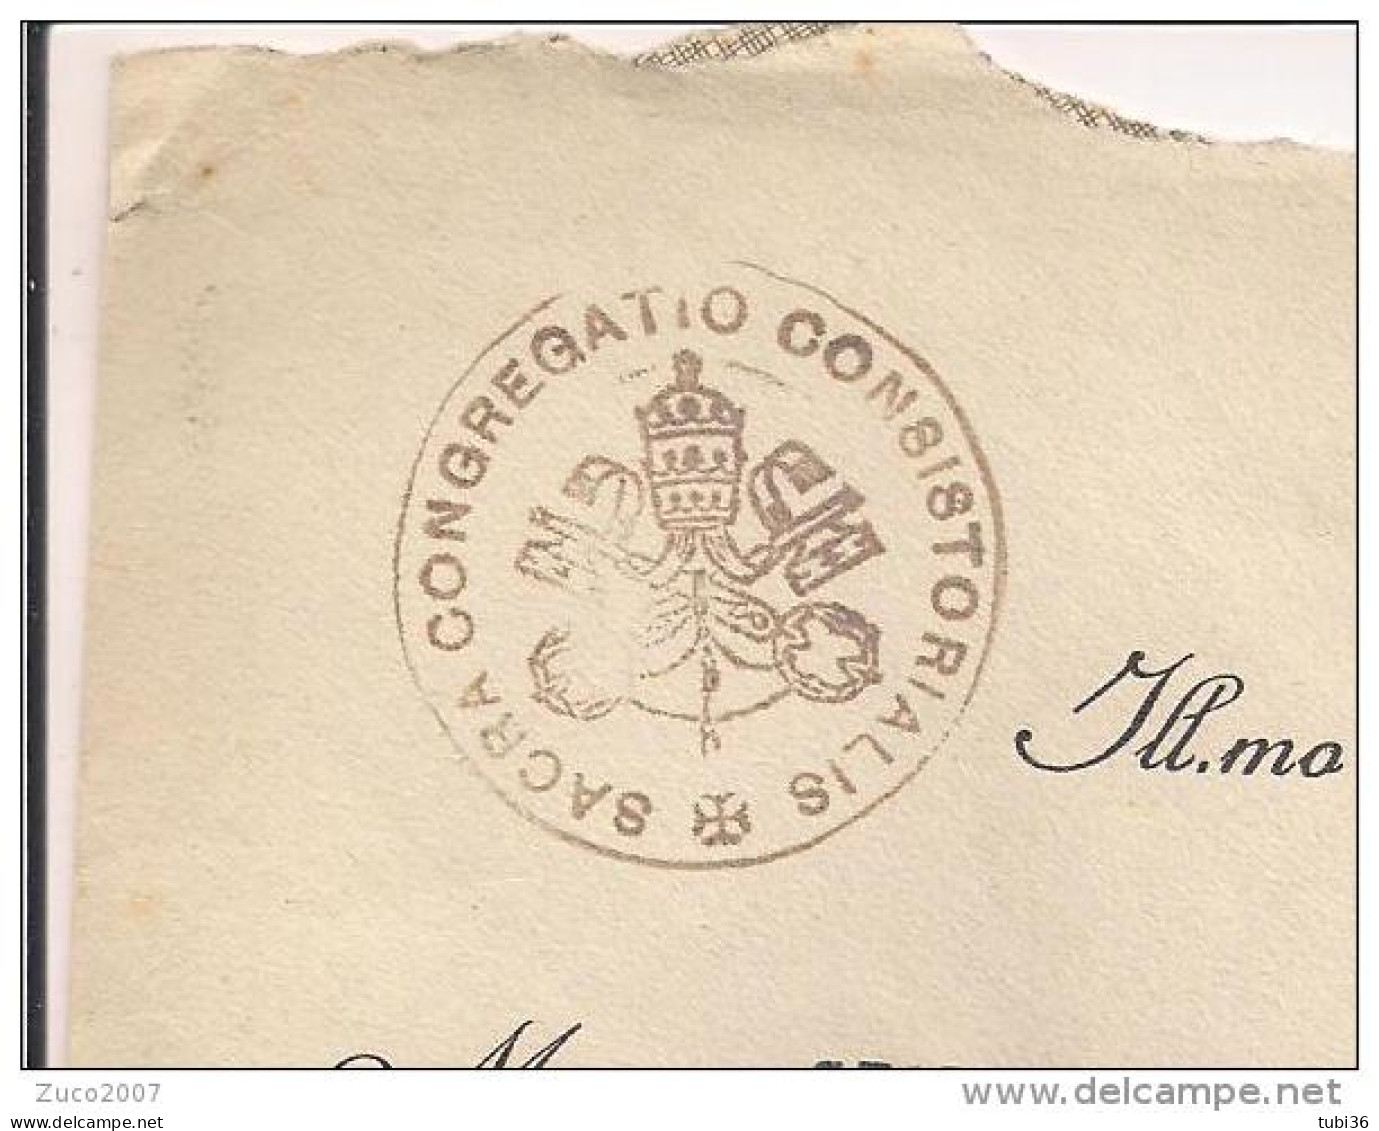 VATICANO,GIARDINI E MEDAGLIONI Cent.80,IN TARIFFA LETTERA,1939,POSTE CITTA DEL VATICANO,IMOLA,BOLOGNA,TIMBRO CERALACCA - Covers & Documents